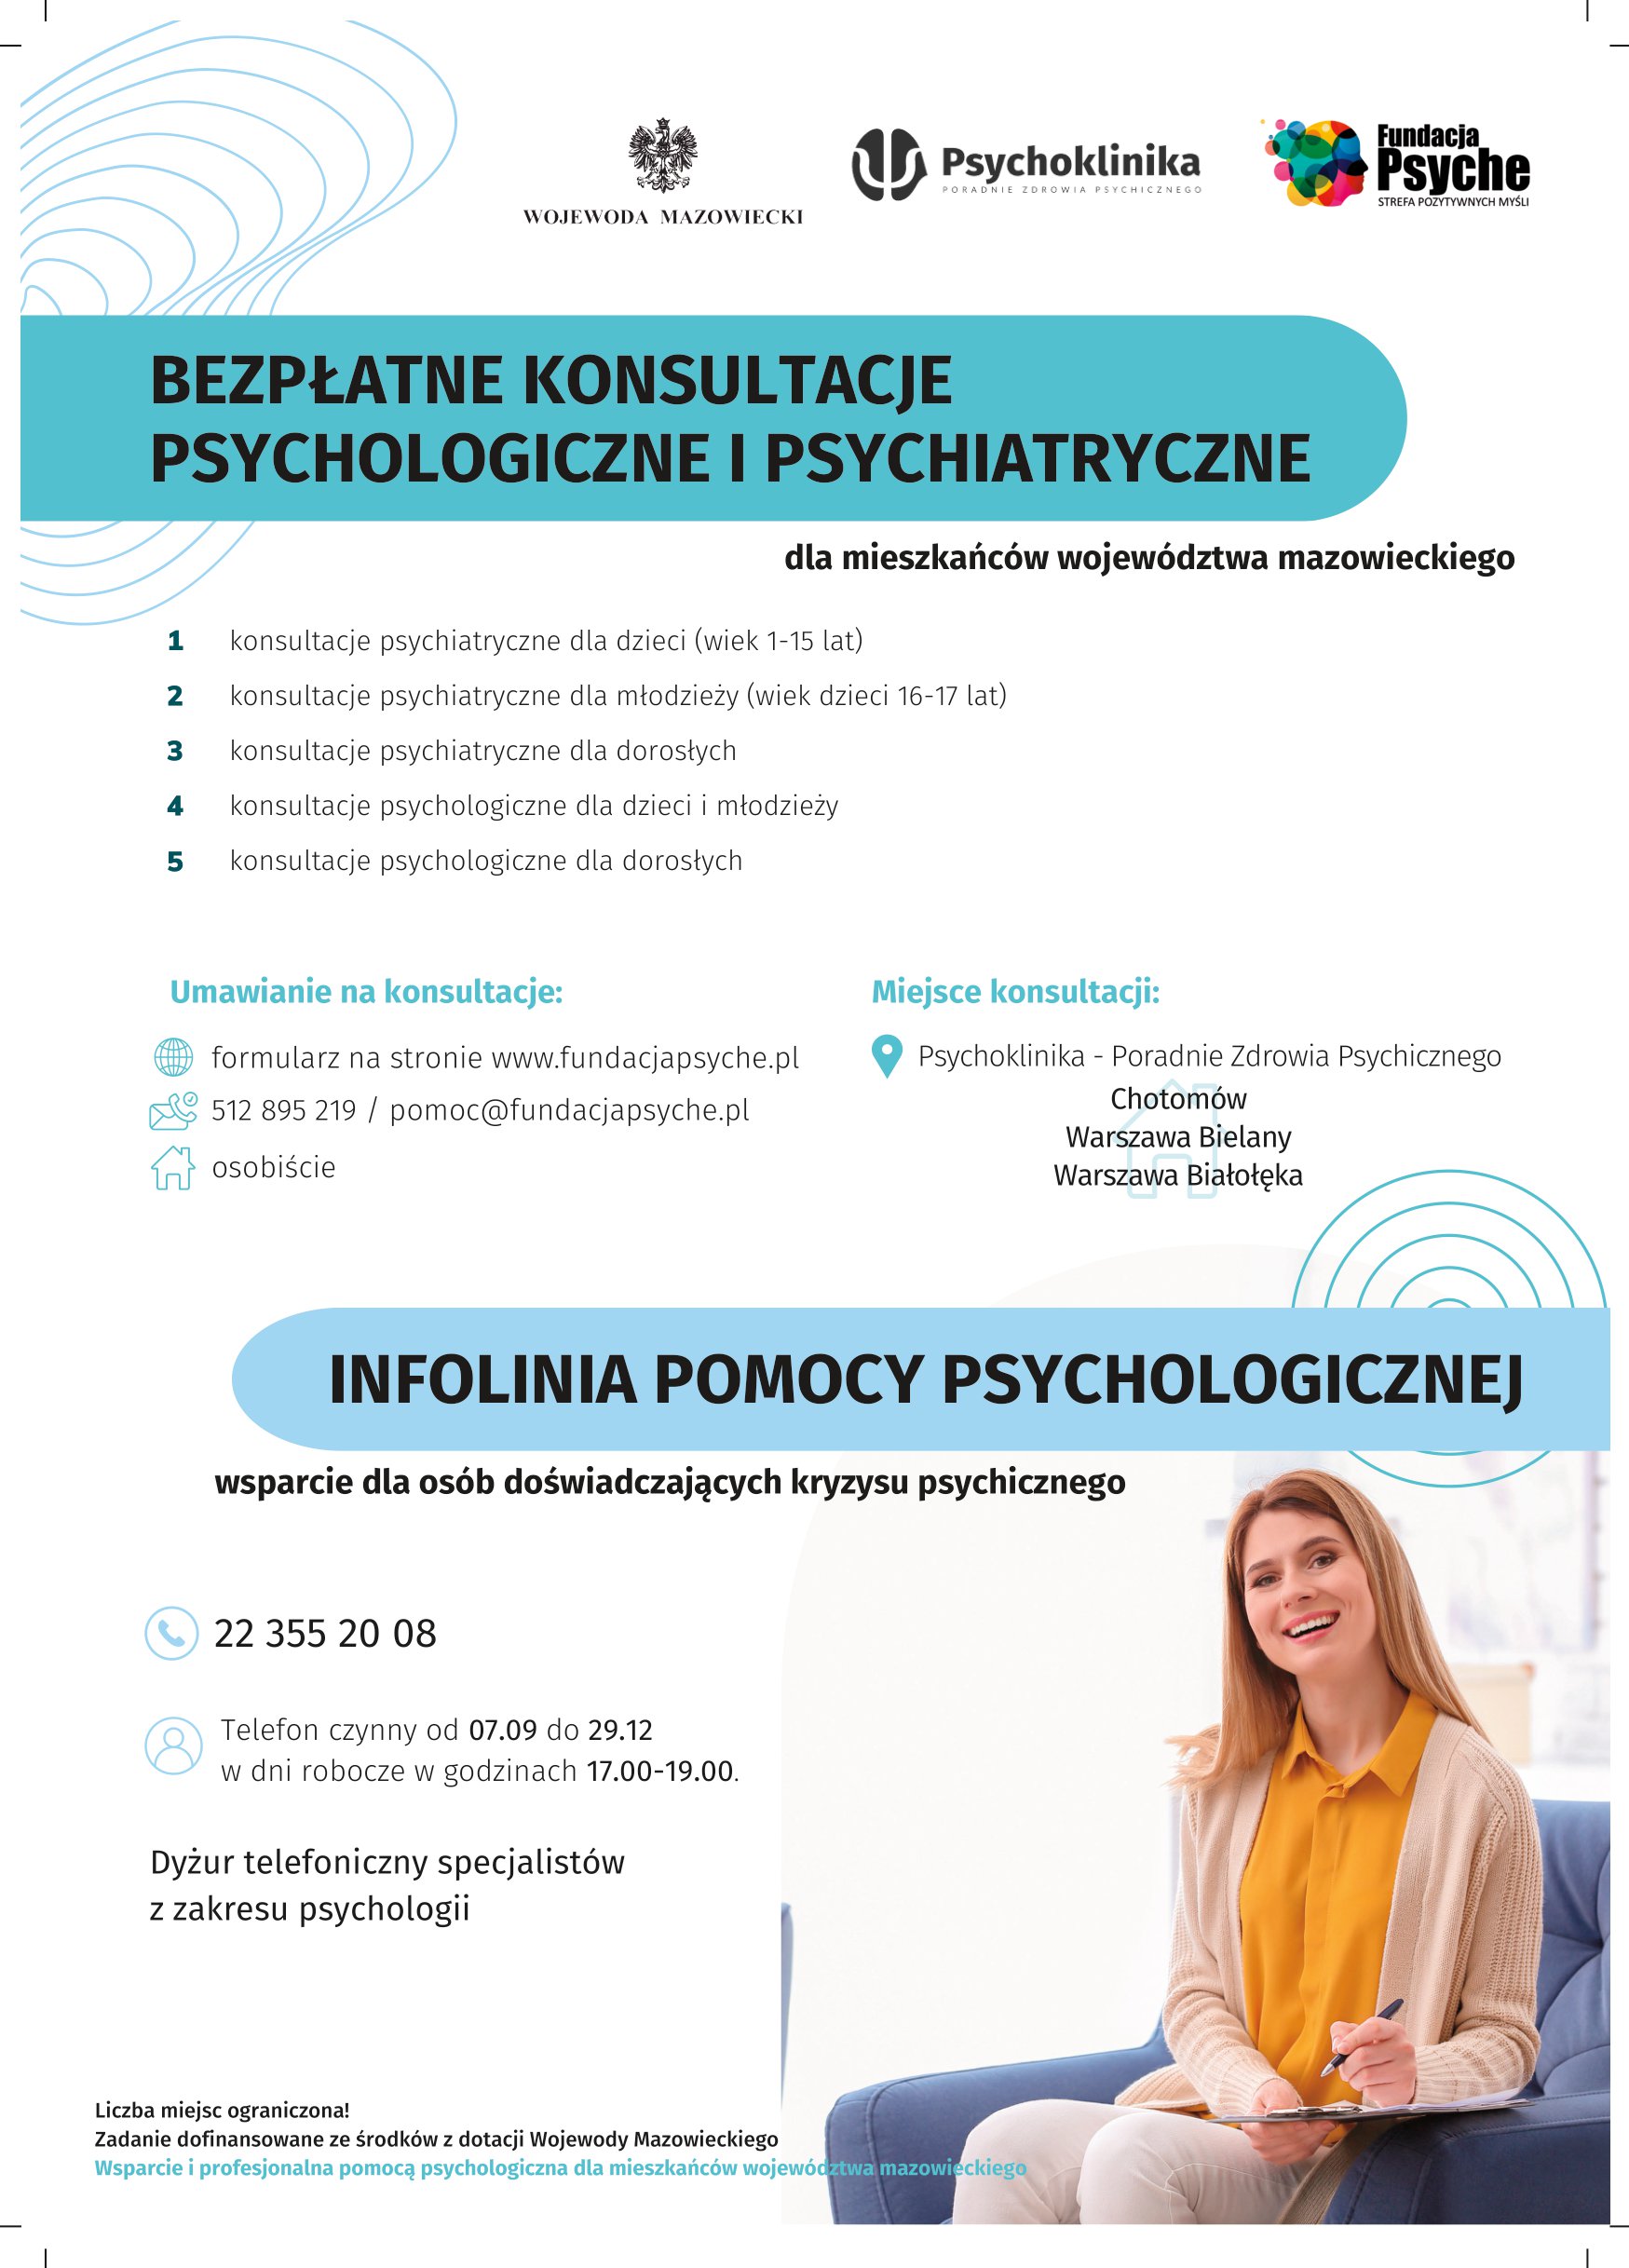 Plakat promujący bezpłatne konsultacje psychologiczne